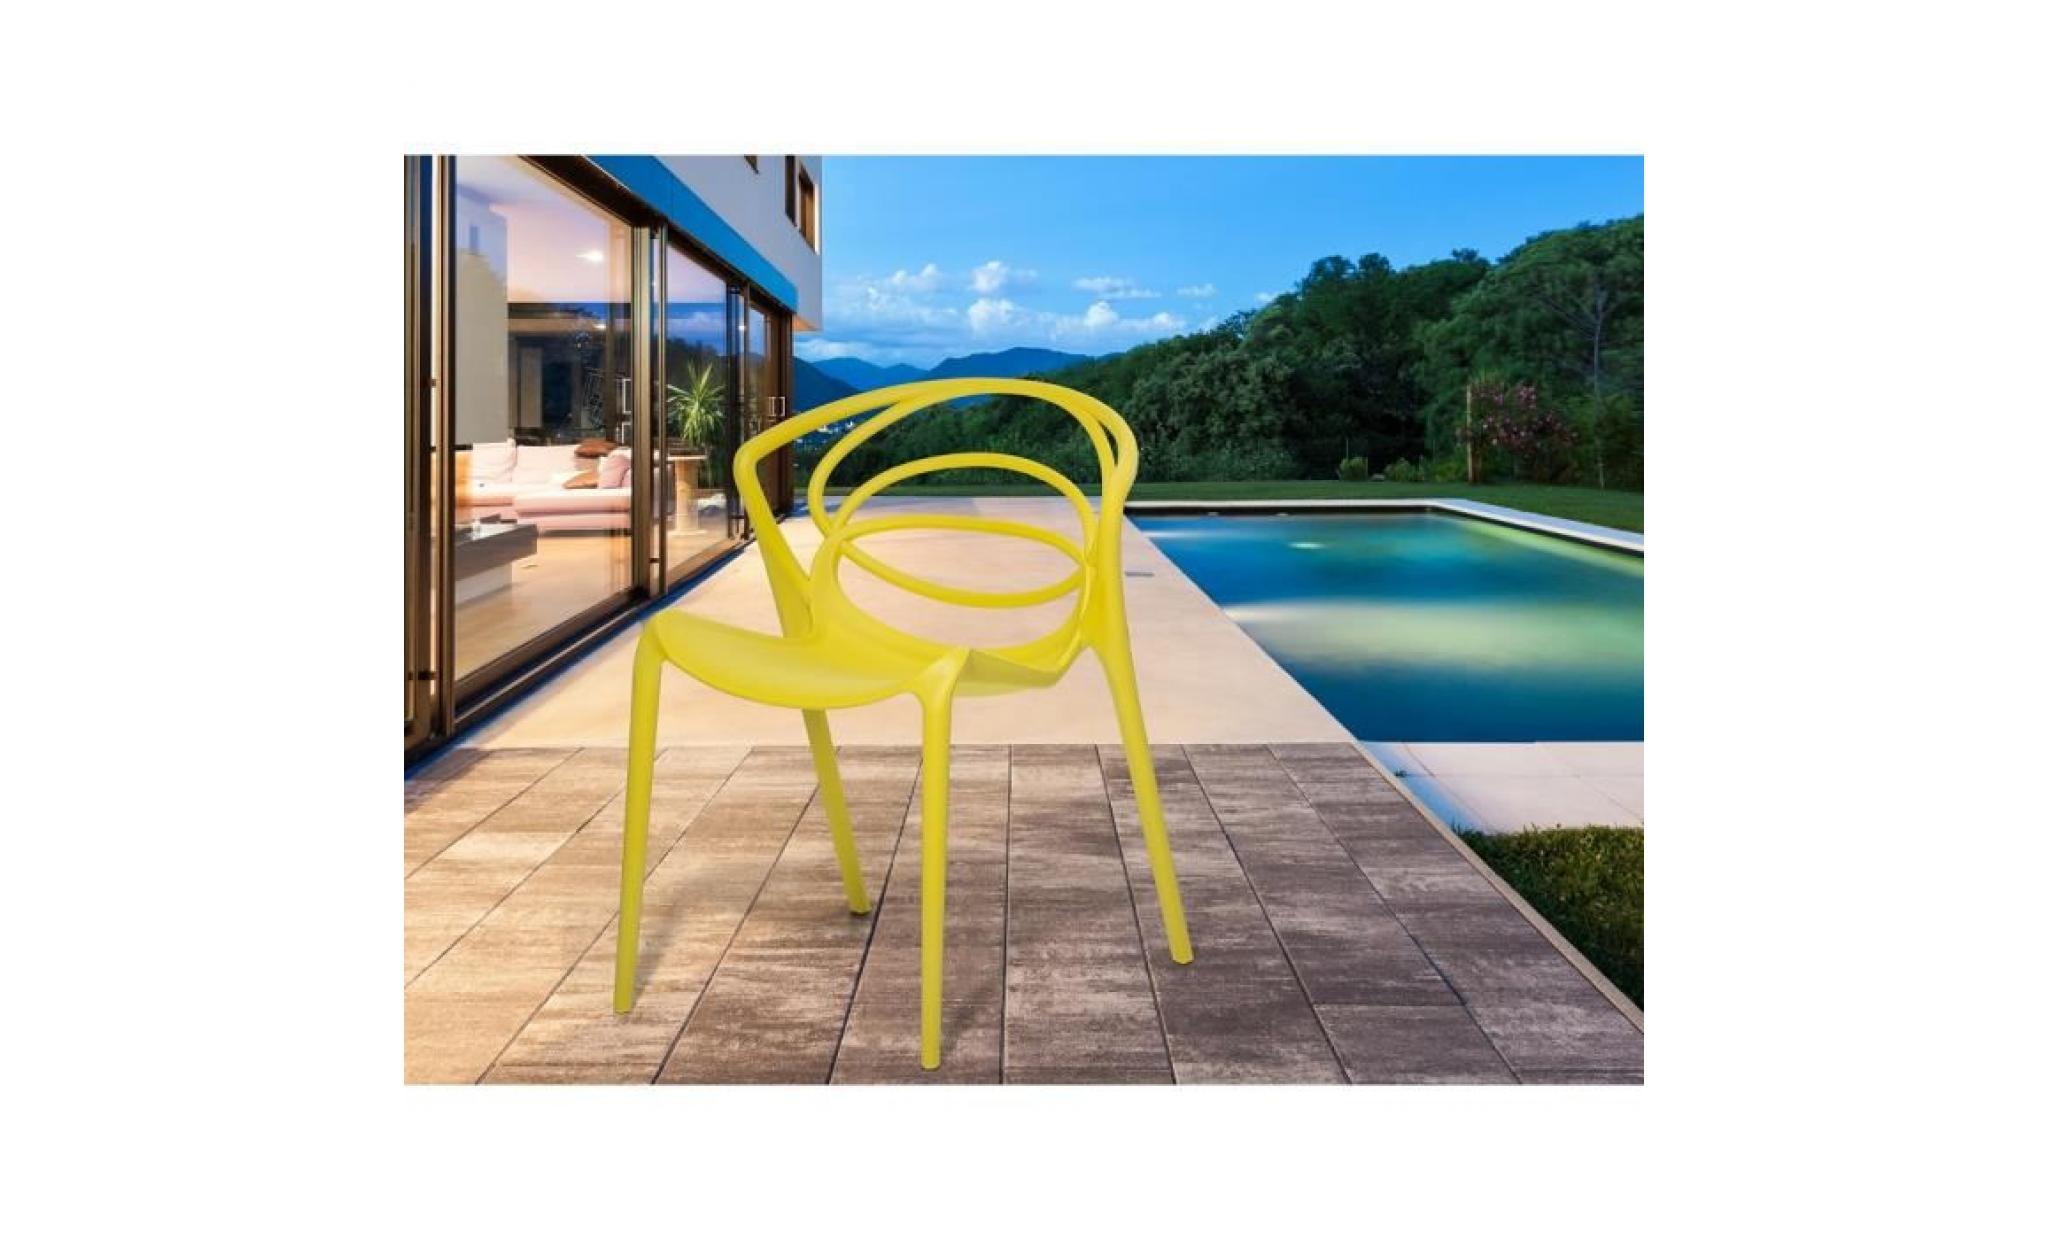 chaise de jardin design   siège en plastique jaune   bend pas cher